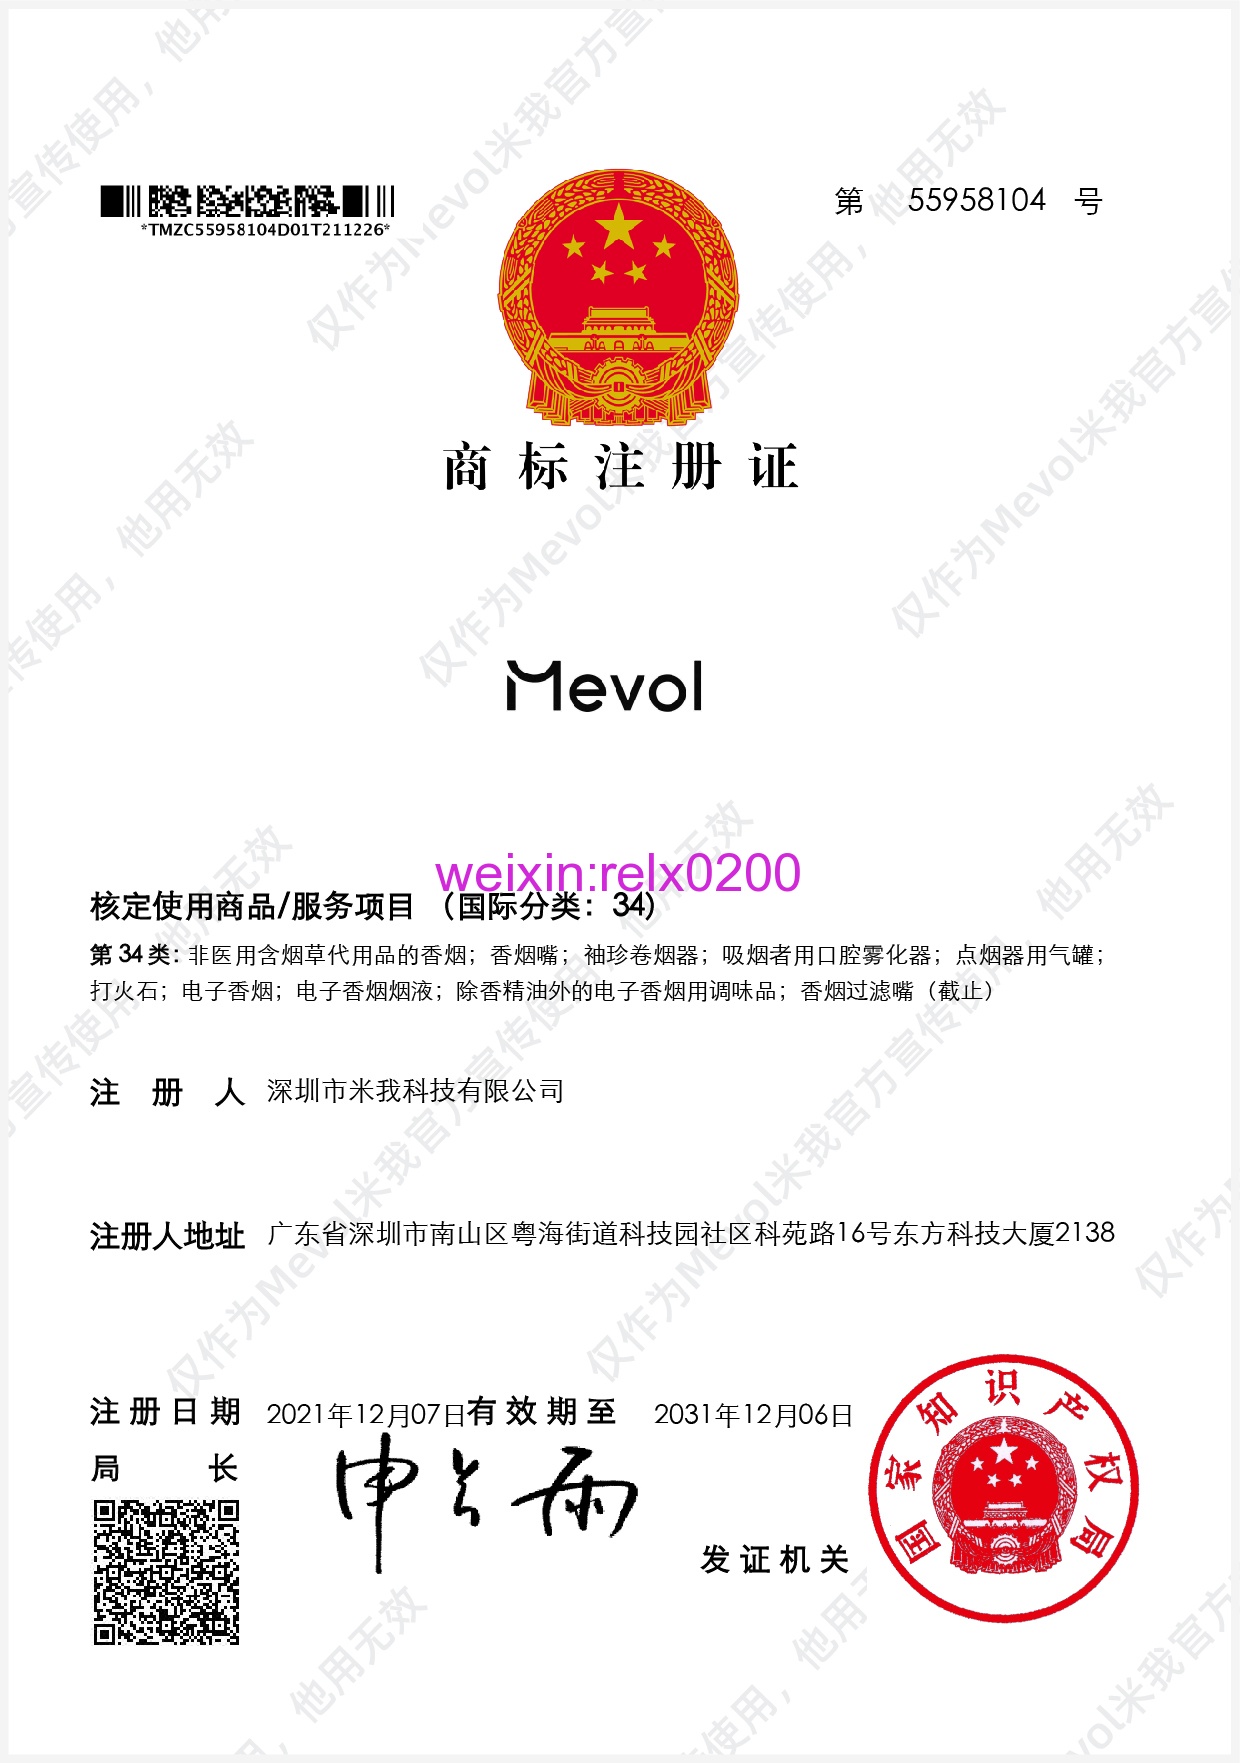 mevol米我电子烟官方网站